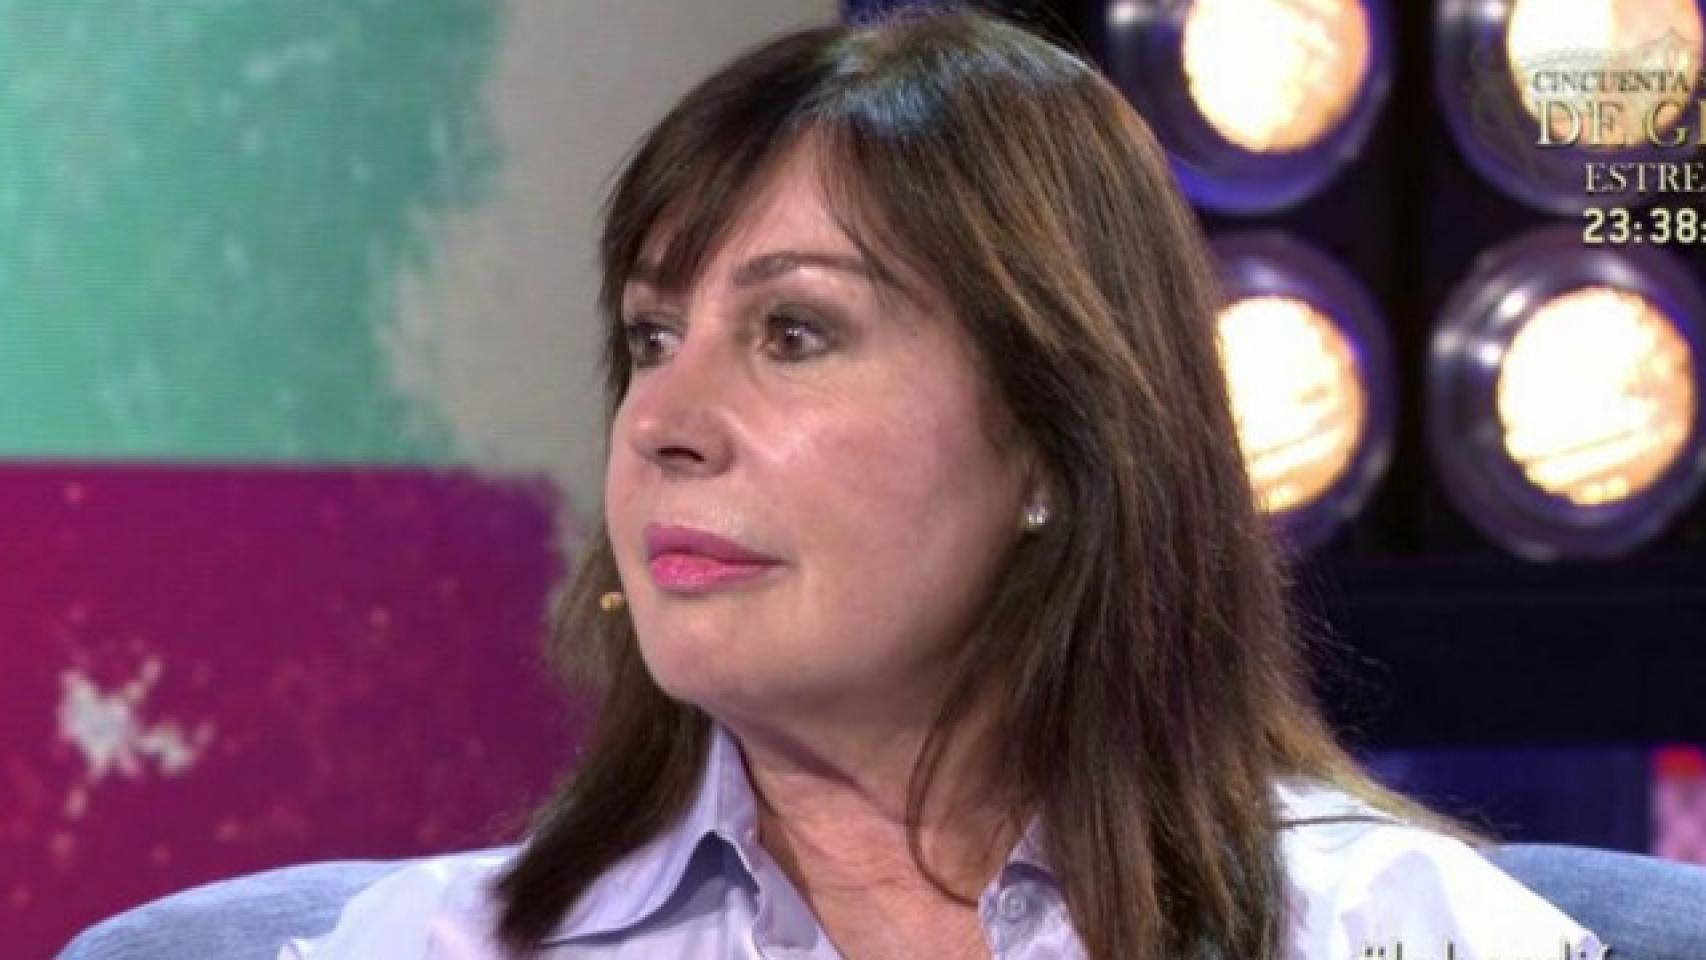 Carmen Martínez-Bordiú da al ‘Deluxe’ un 14,4%, lo más visto del sábado noche